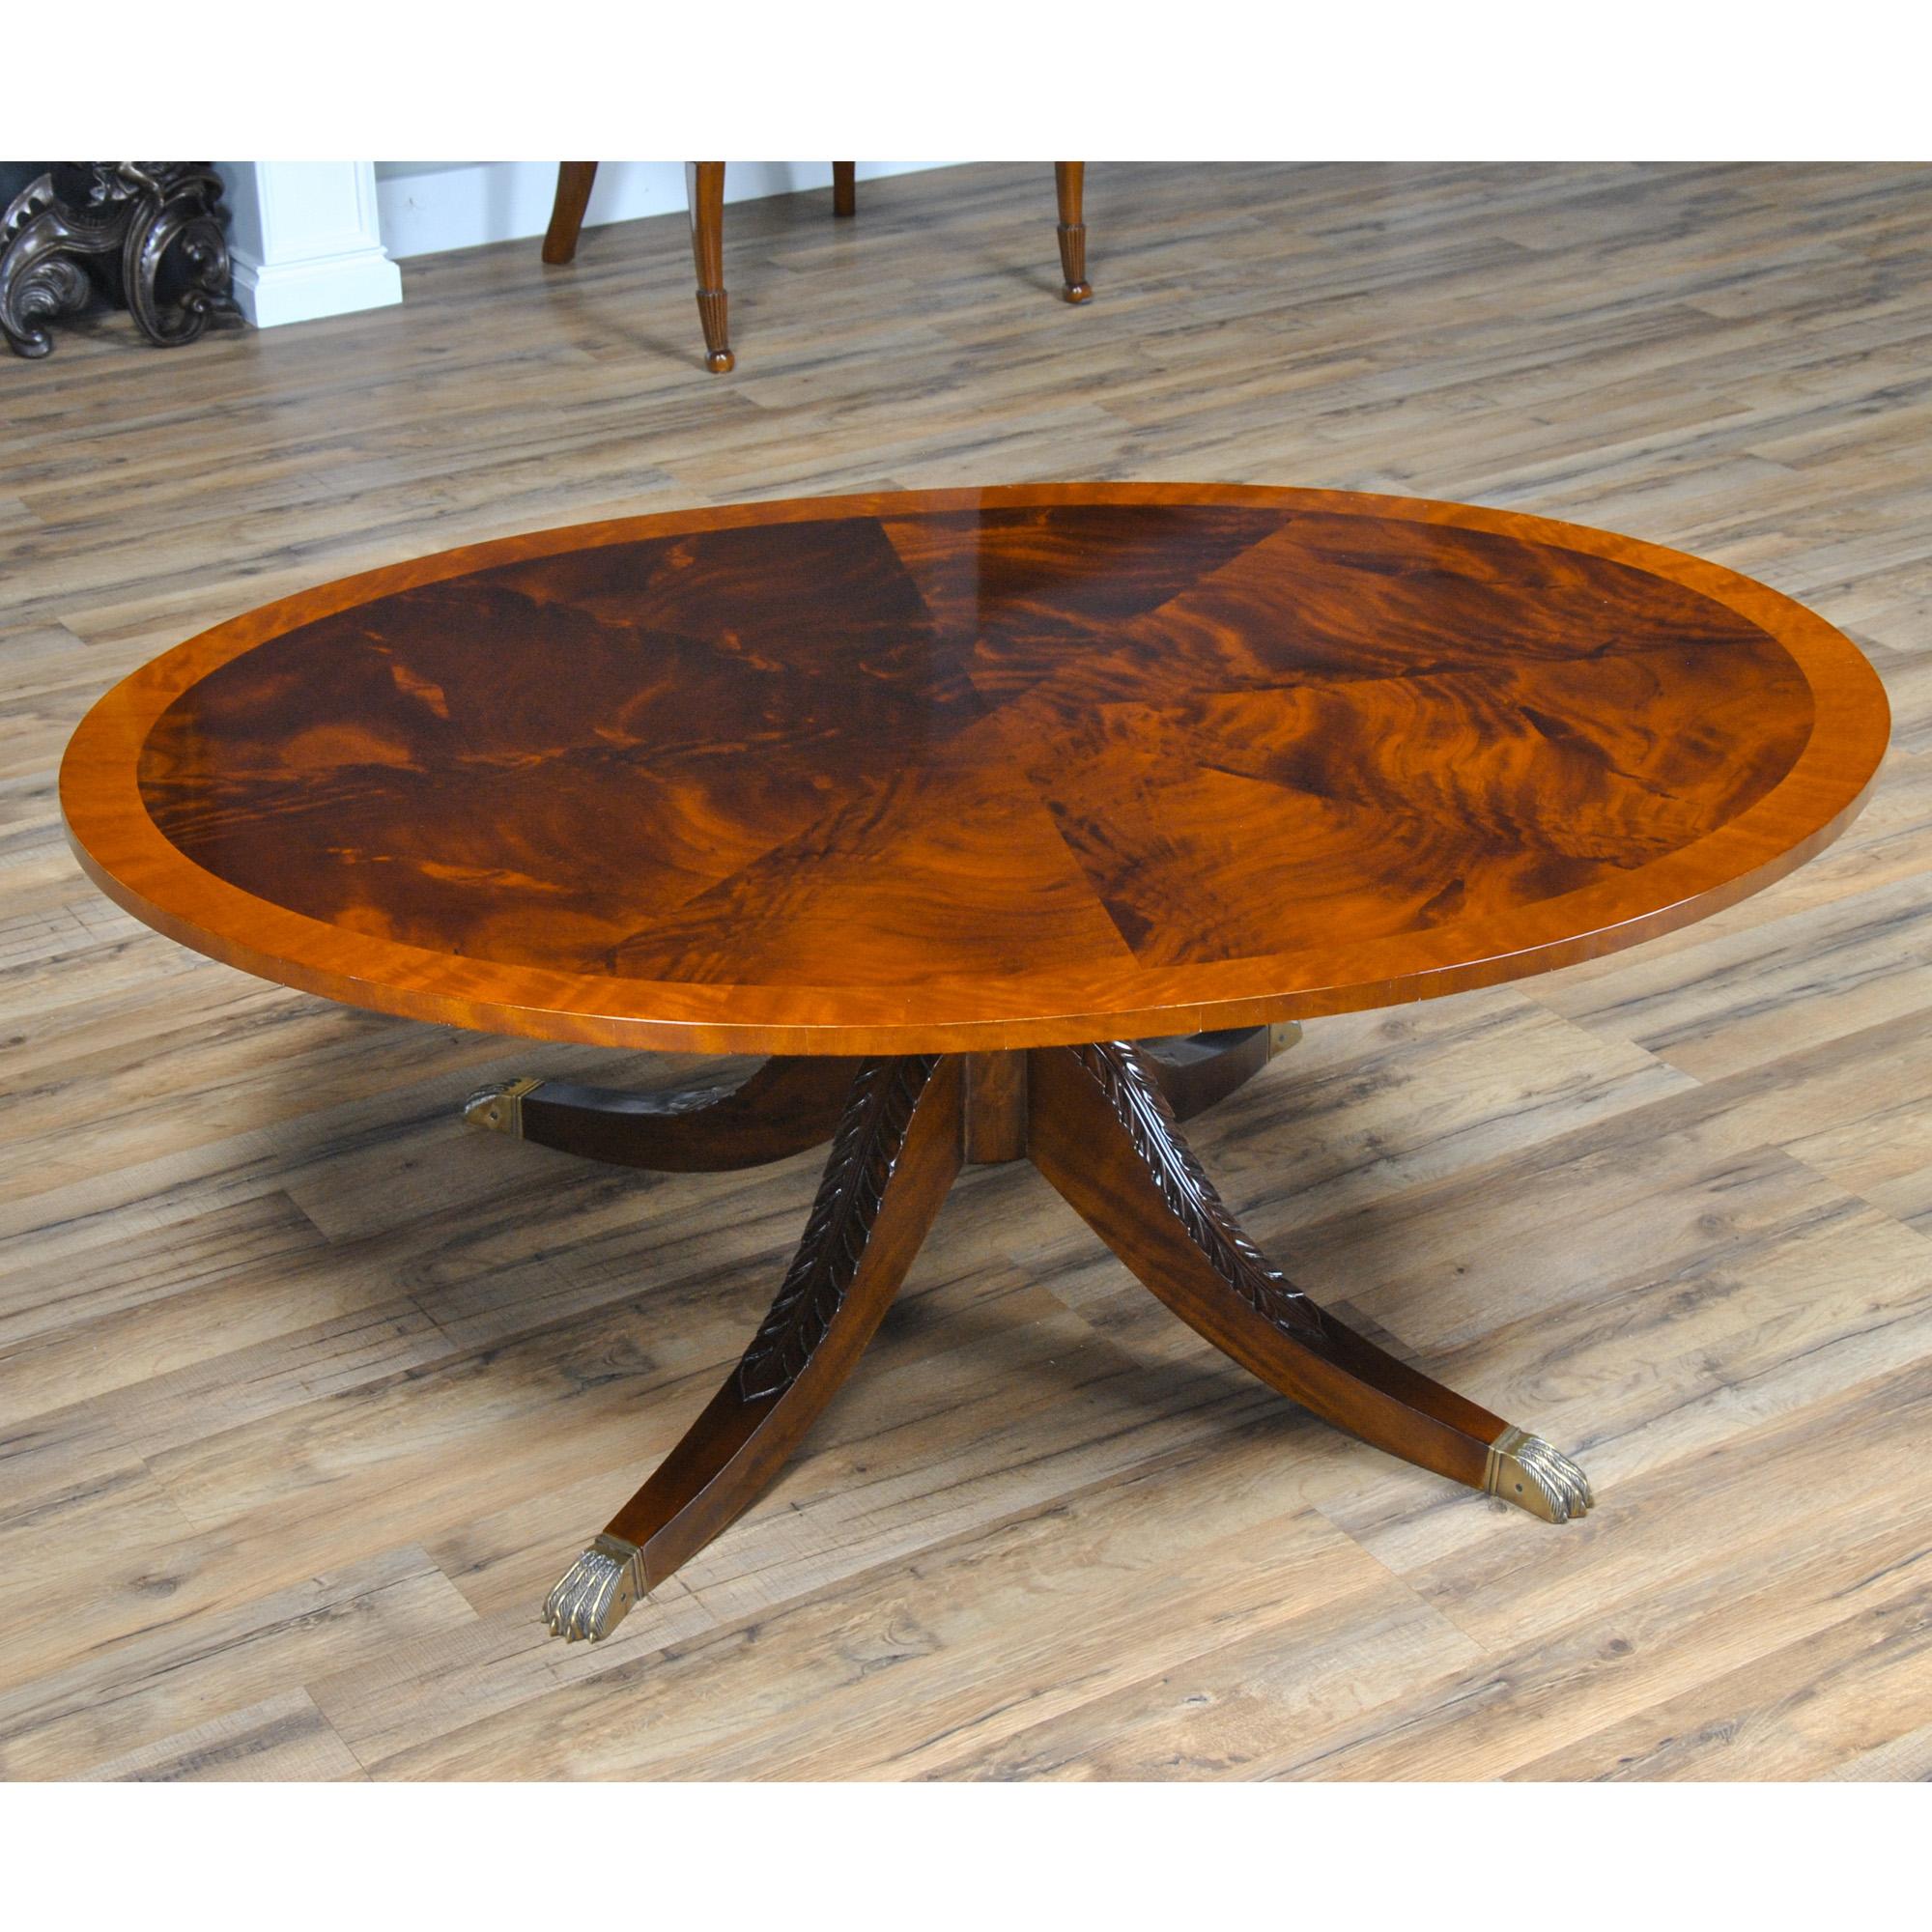 Une table à cocktail ovale de la plus haute qualité, produite par Niagara Furniture. Un bandeau de satin entoure un champ d'acajou figuré en forme de tarte pour former un plateau élégant et elliptique. Le plateau de forme ovale permet de se déplacer